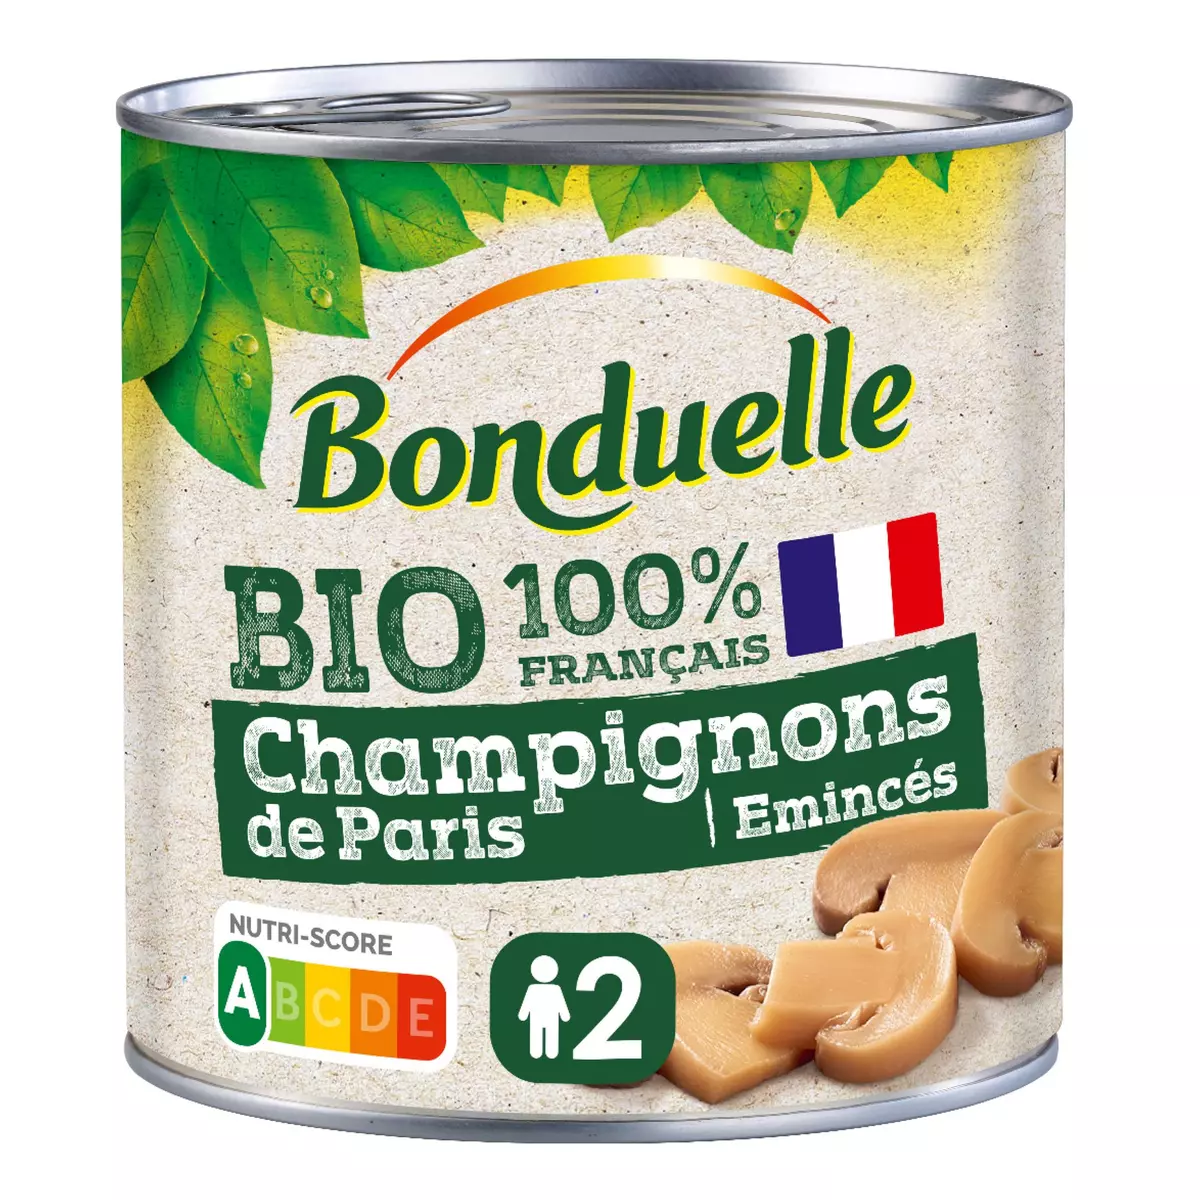 BONDUELLE Champignons de Paris émincés 100% français bio 230g